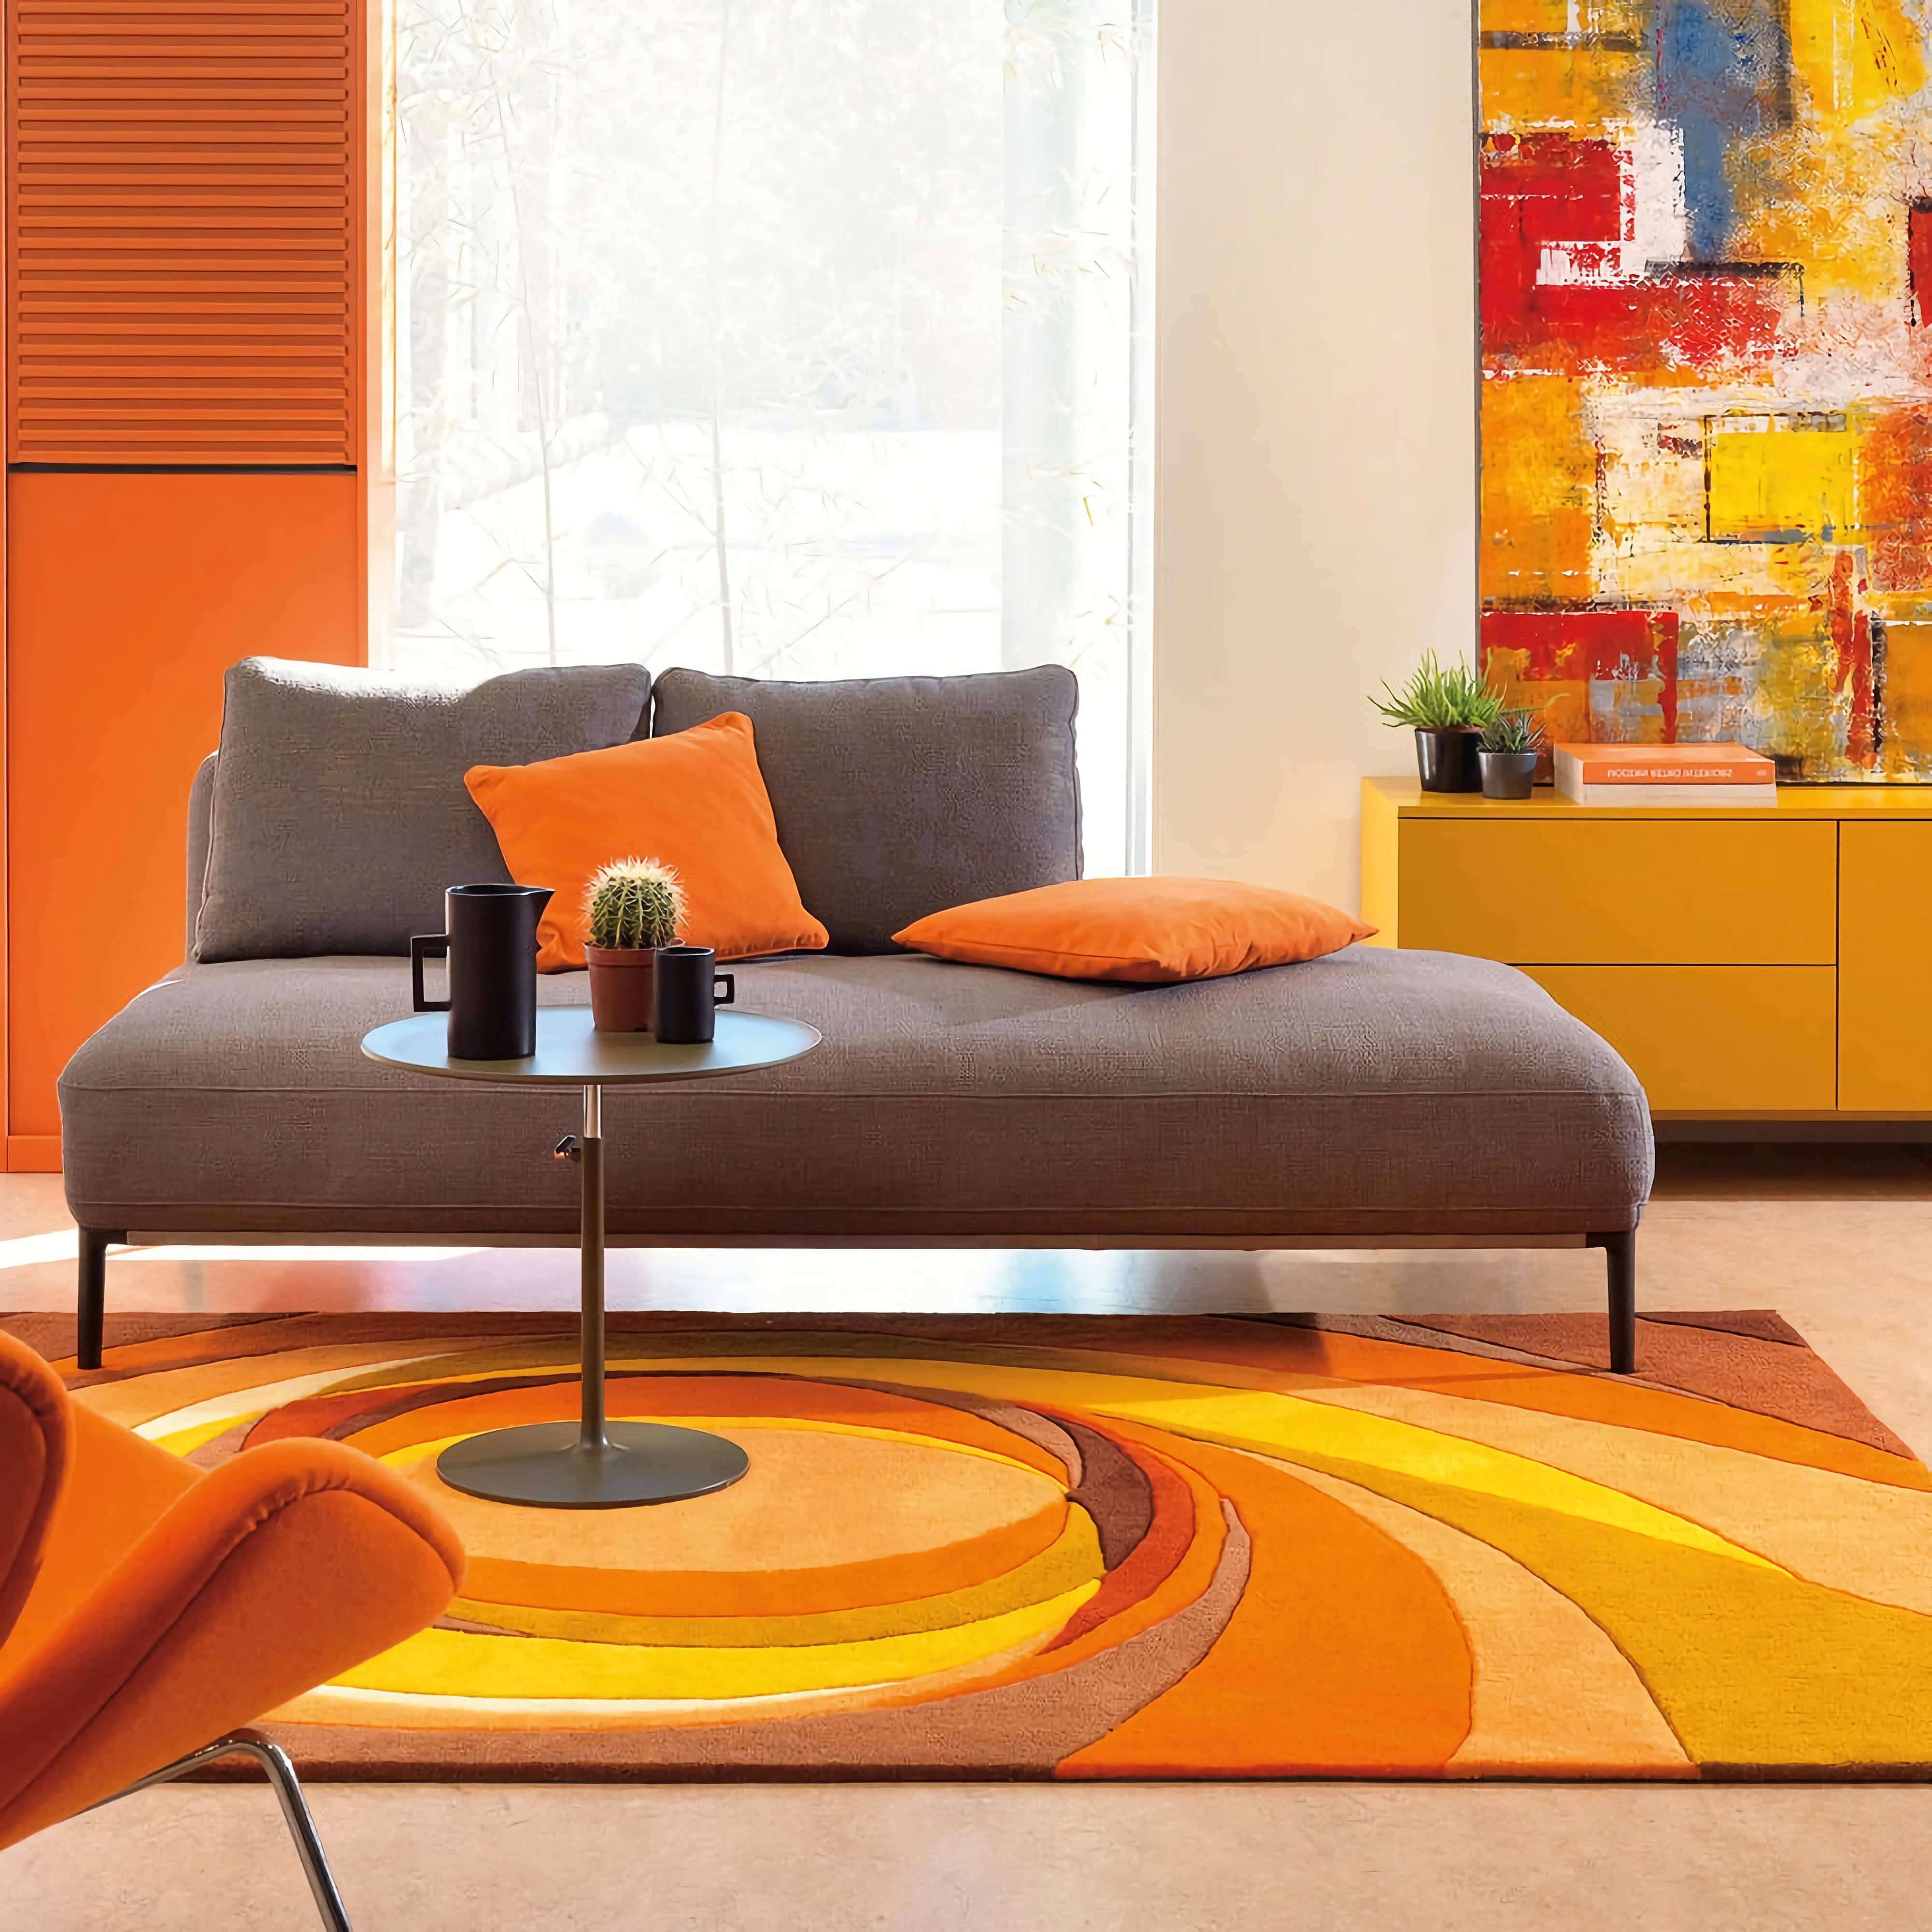 Гостиная. Оранжевые стены, подушки, коврик, мебель